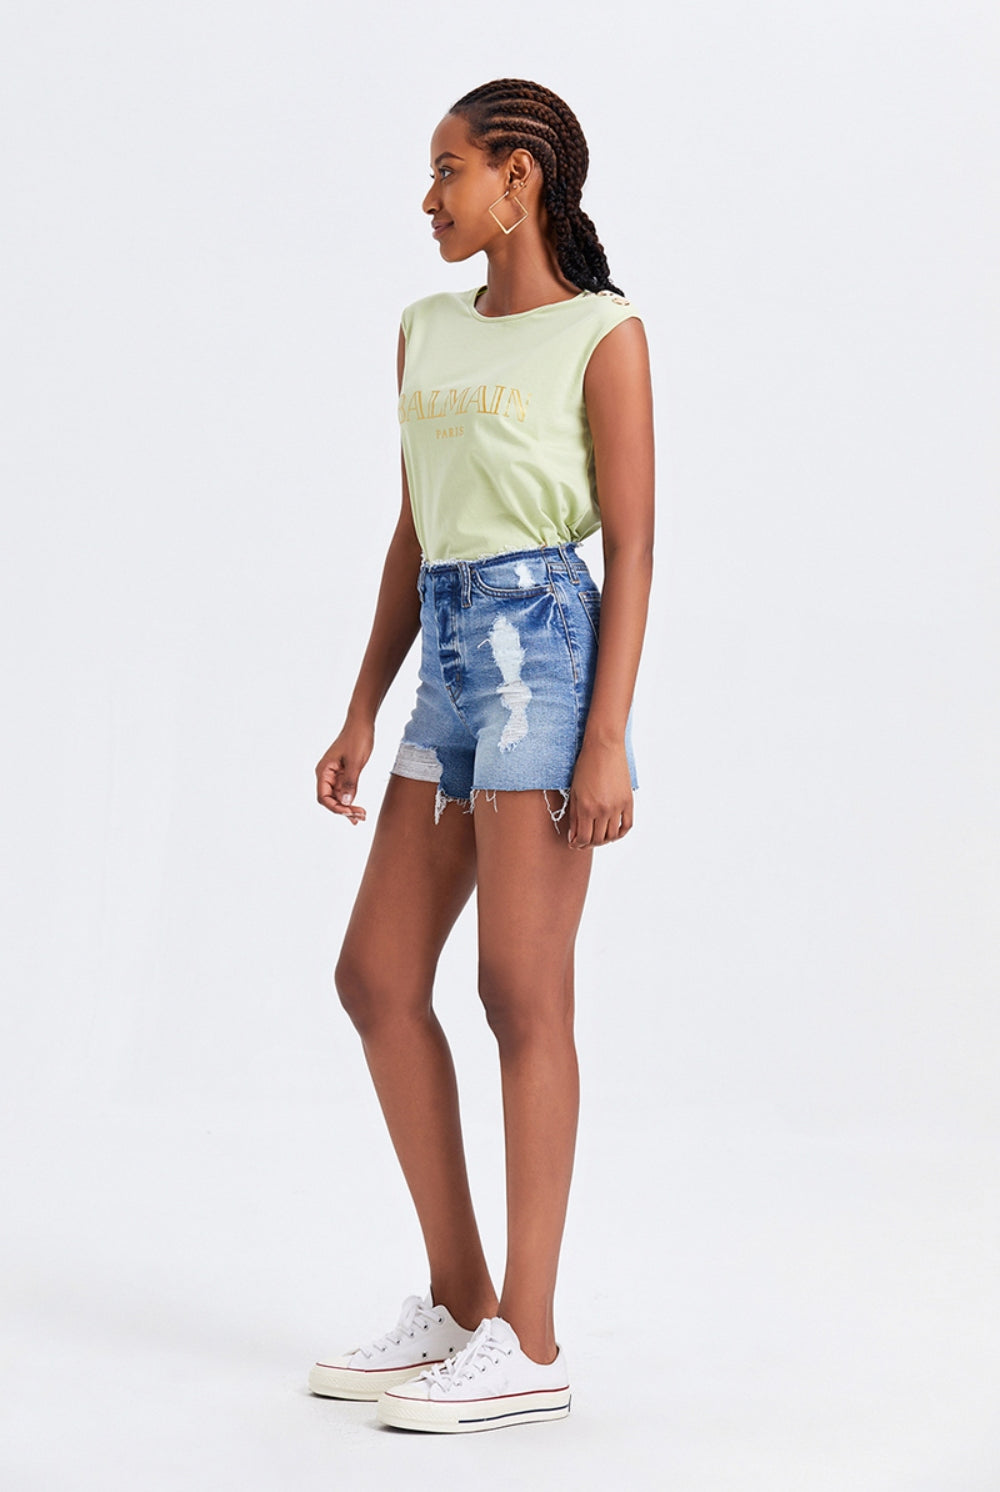 Model showcasing high waist denim shorts with fringed hem